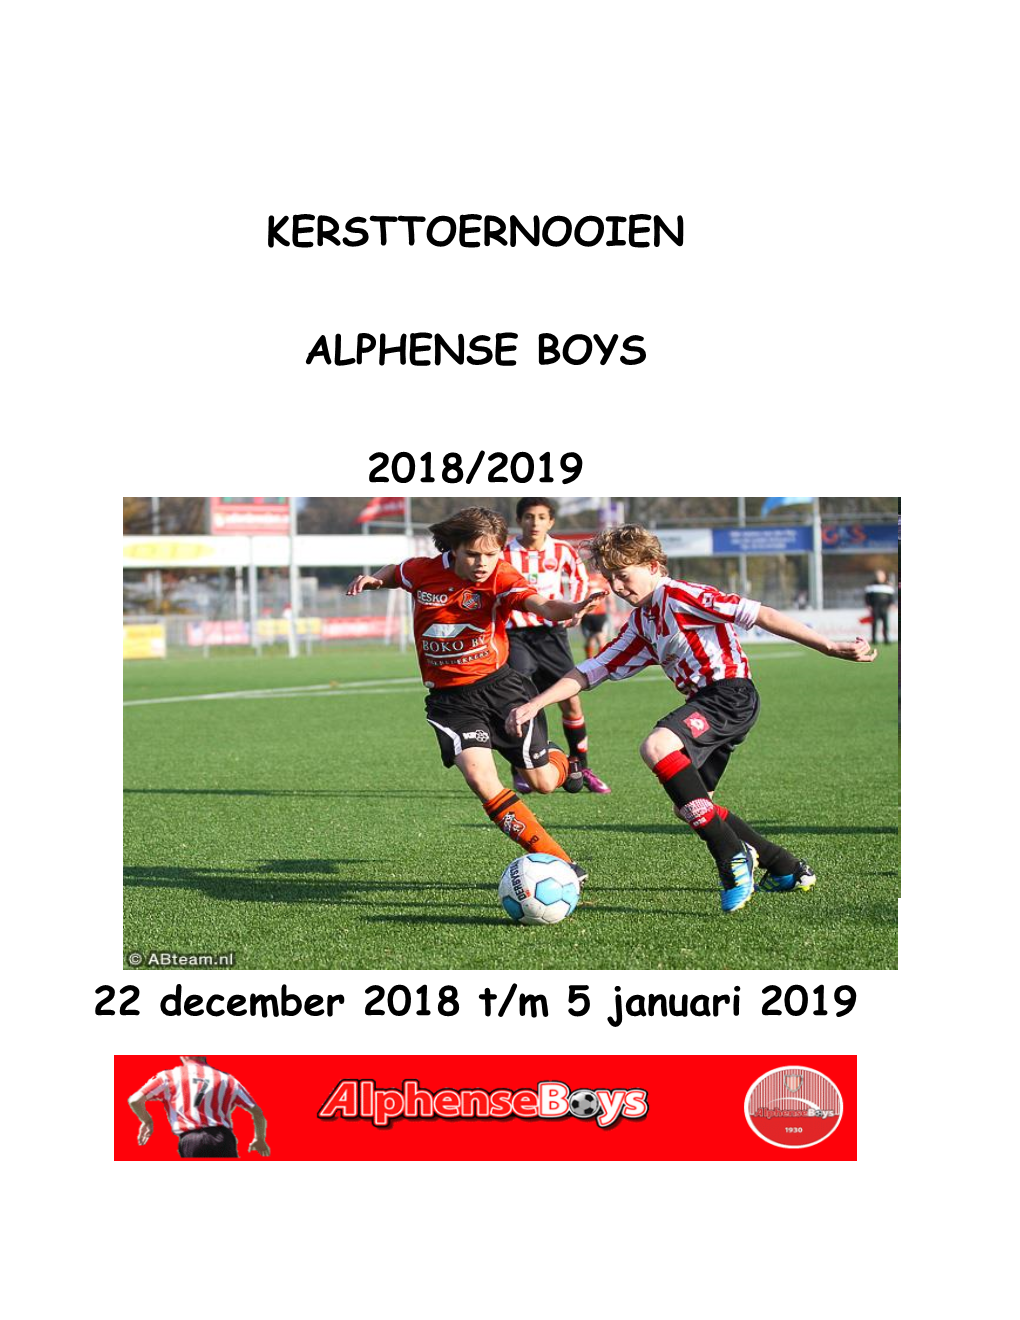 KERSTTOERNOOIEN ALPHENSE BOYS 2018/2019 22 December